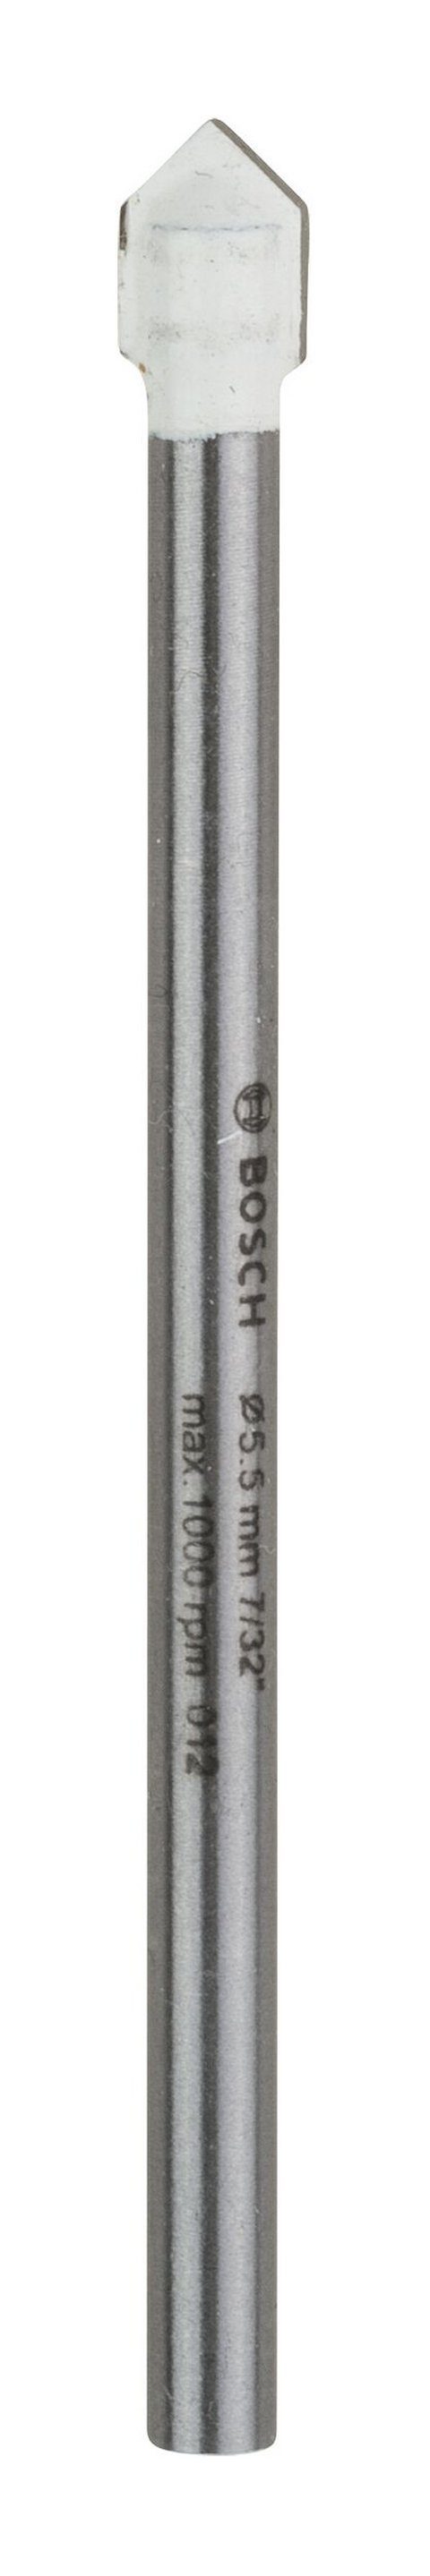 BOSCH Universalbohrer, CYL-9 Ceramic Fliesenbohrer - 5,5 x 70 mm - 1er-Pack